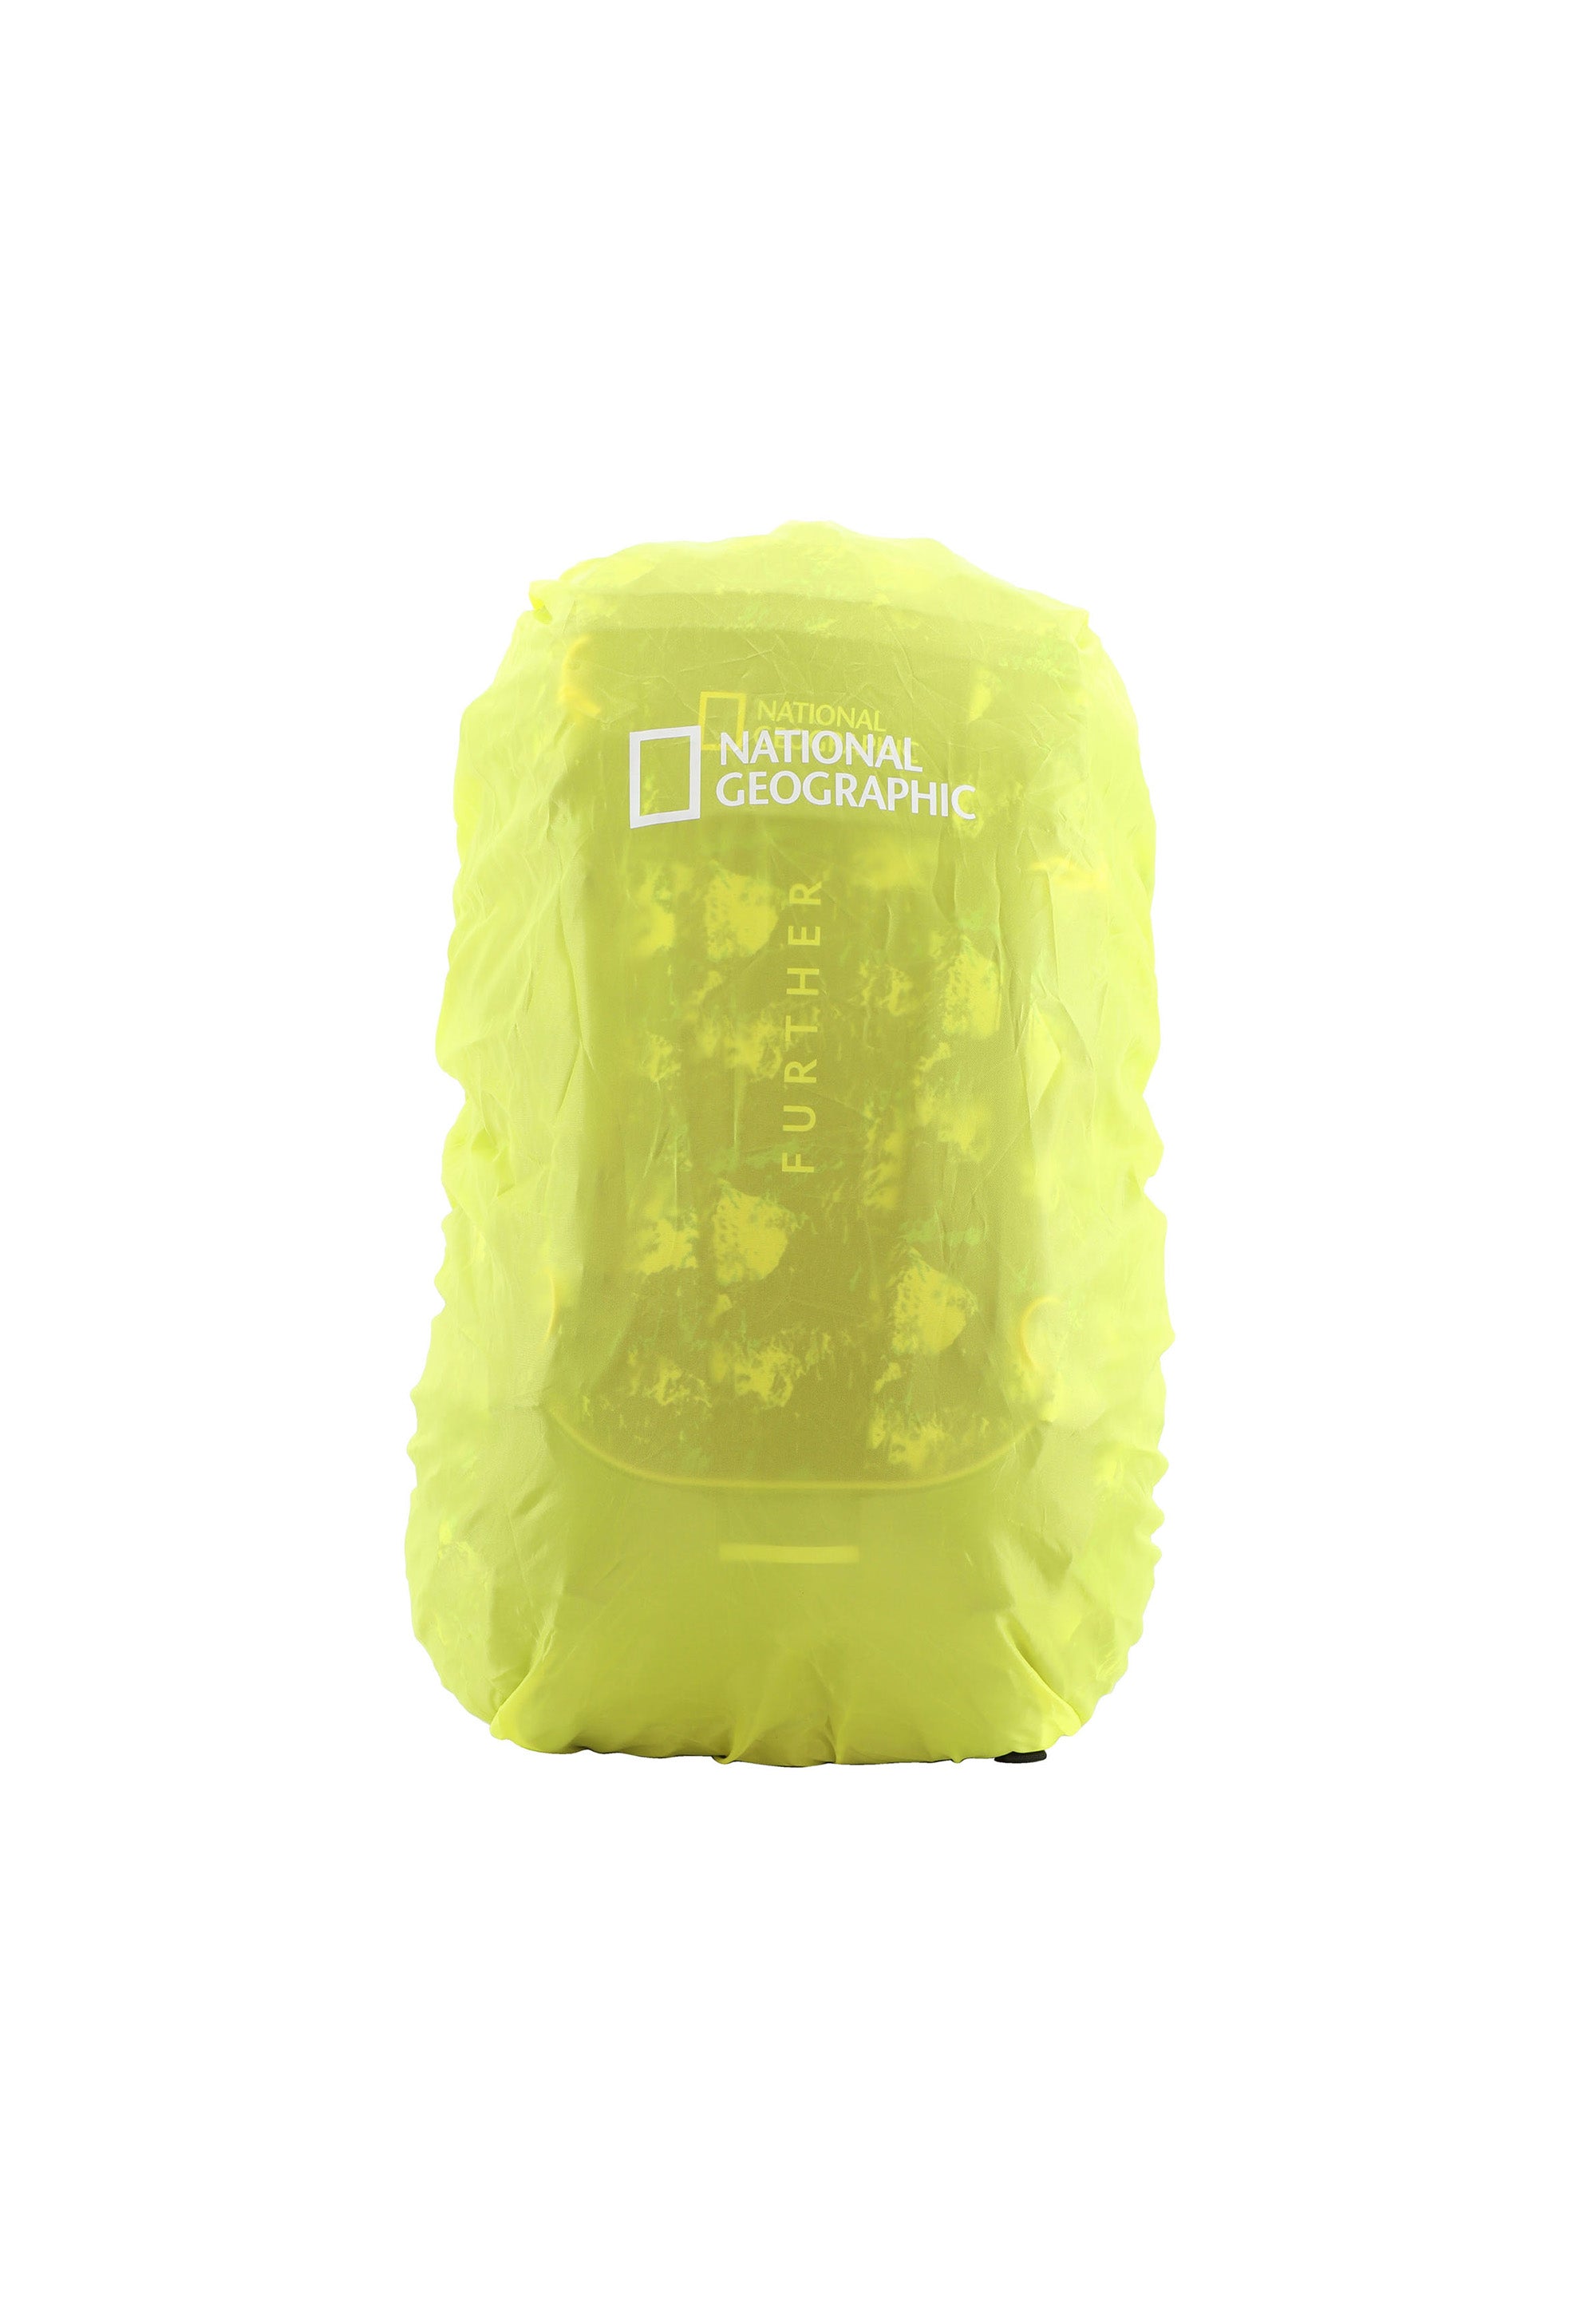 National Geographic - Destination Outdoor Rucksack mit RFID-Blocker (58cm) | Grün